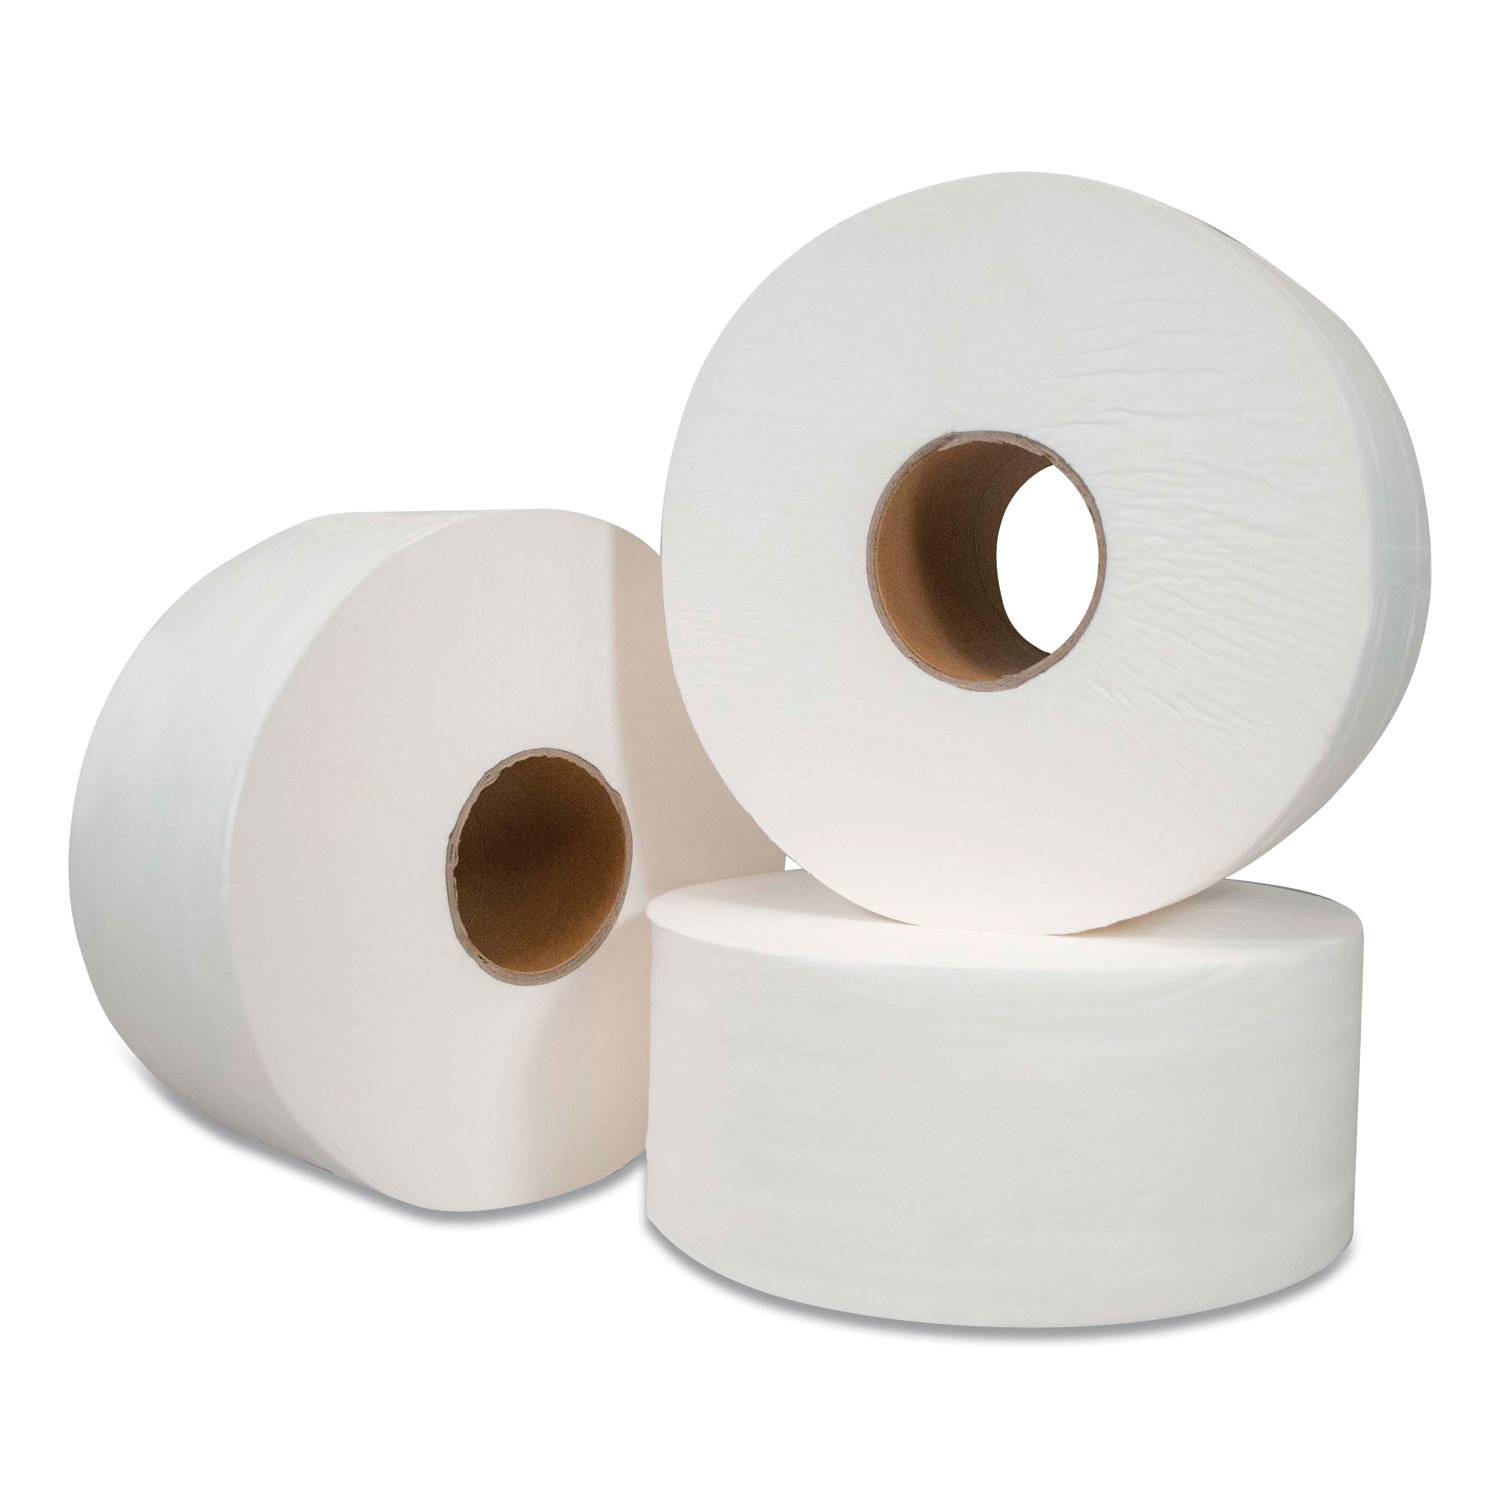  Morcon Tissue VT110 Jumbo Bath Tissue, Septic Safe, 2-Ply, White, 750 ft, 12 Rolls/Carton (MORVT110) 